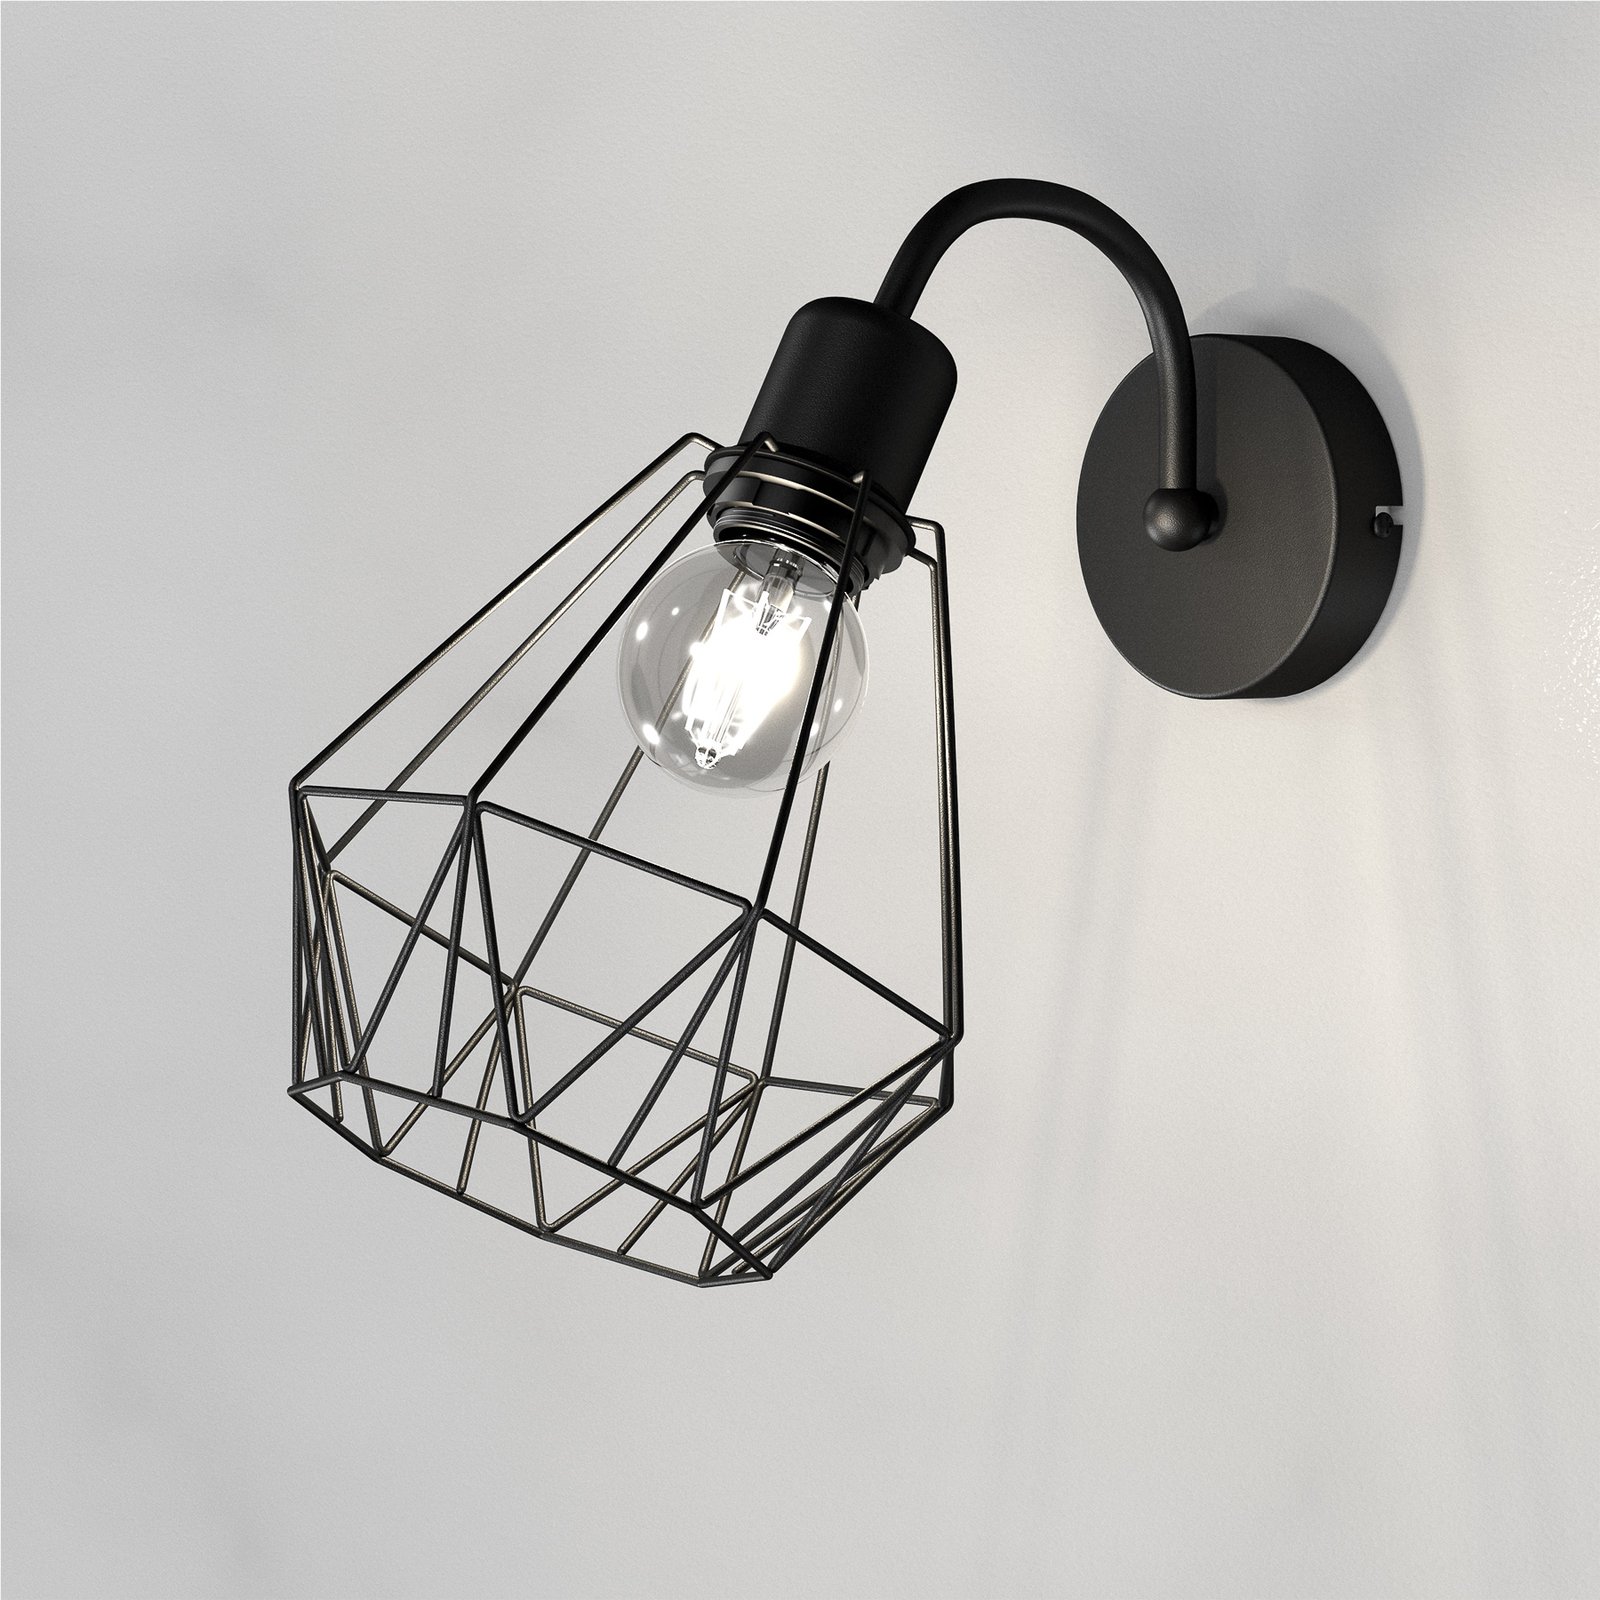 Jin wandlamp, zwart, 1-lamp